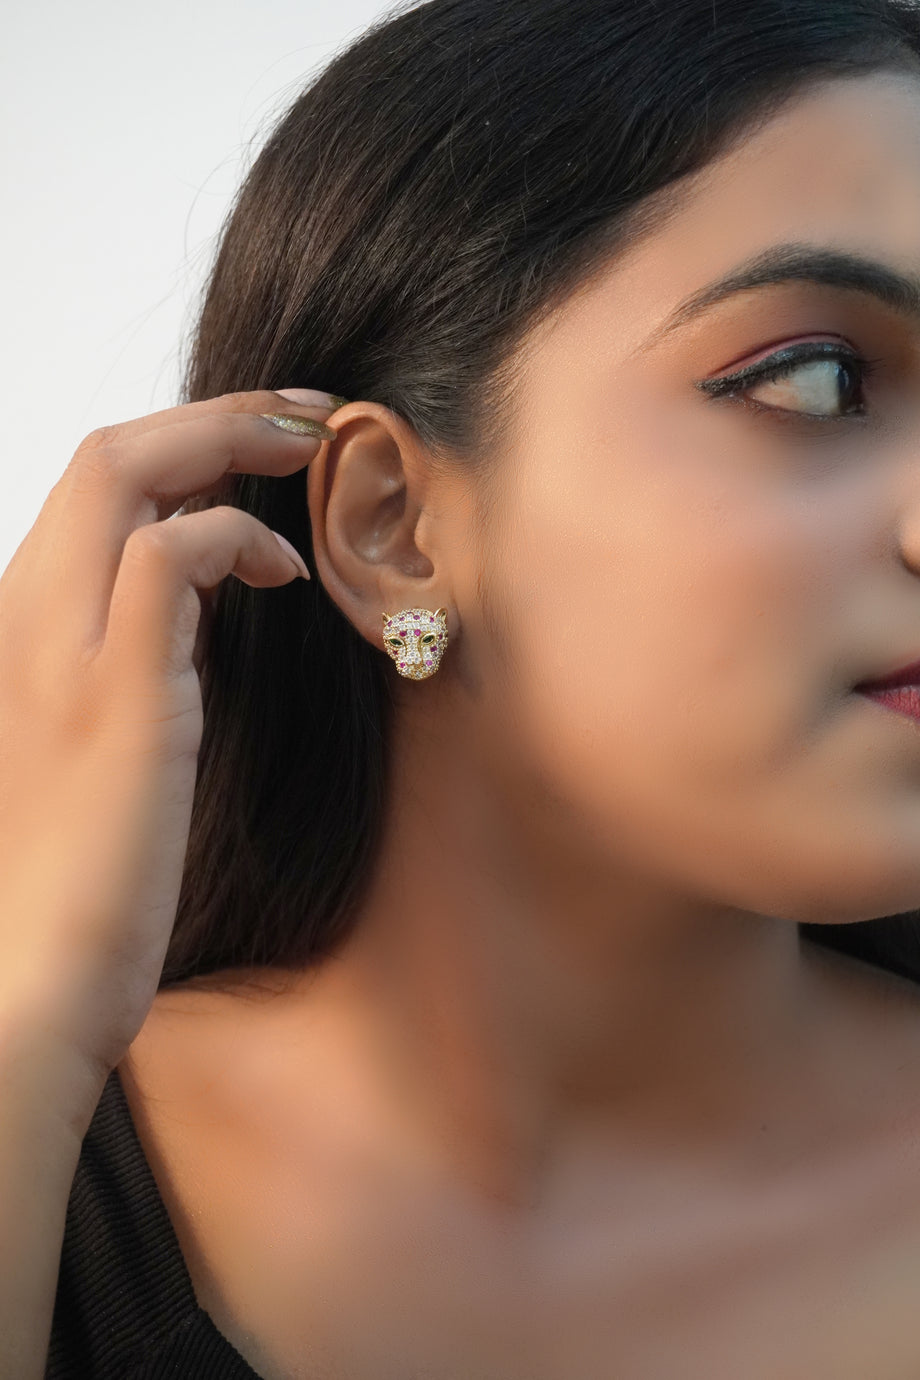 Long Ladies Earrings New Design for Women Girls under 100 Rupees